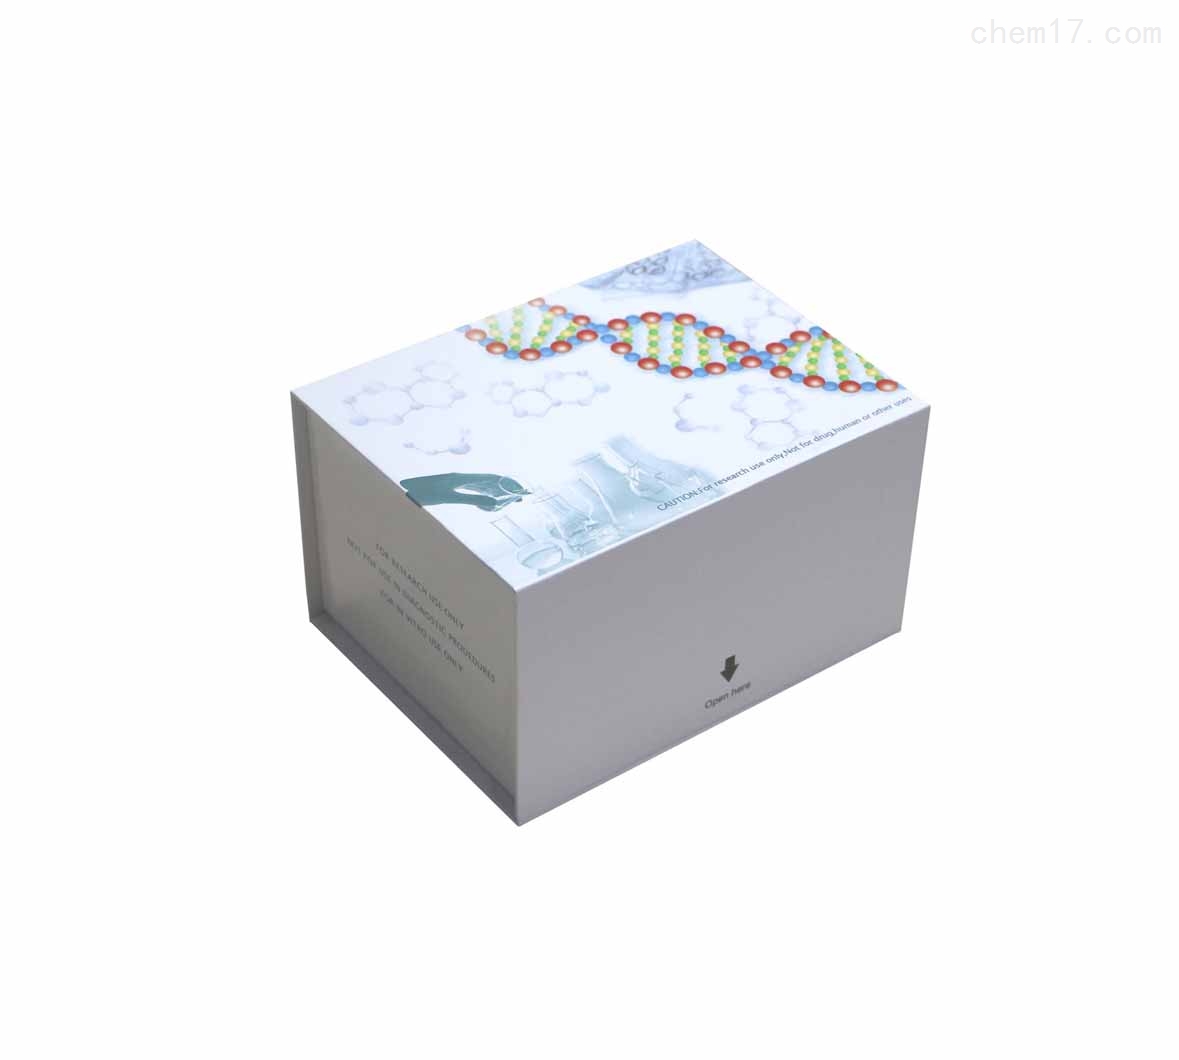 人脯氨酸/谷氨酰胺富含性剪接因子(SFPQ)ELISA试剂盒免费待测